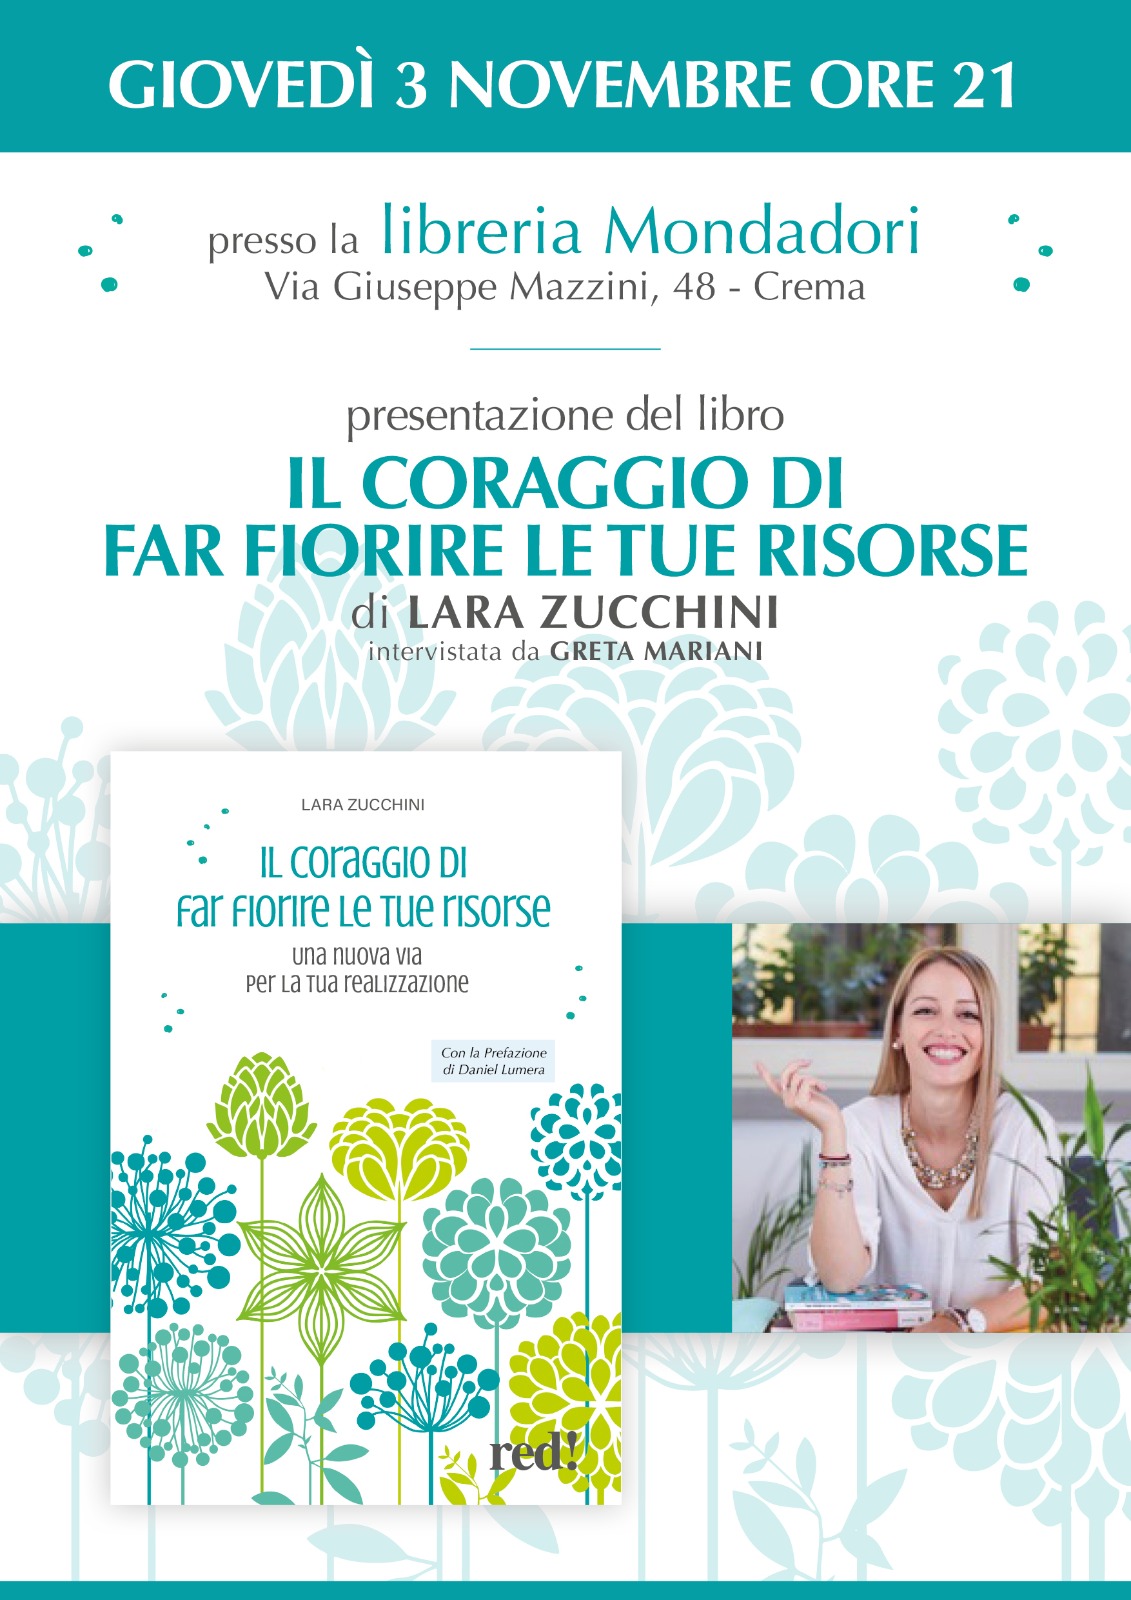 Il coraggio di far fiorire le tue risorse, Lara Zucchini presenta il suo nuovo libro in Mondadori